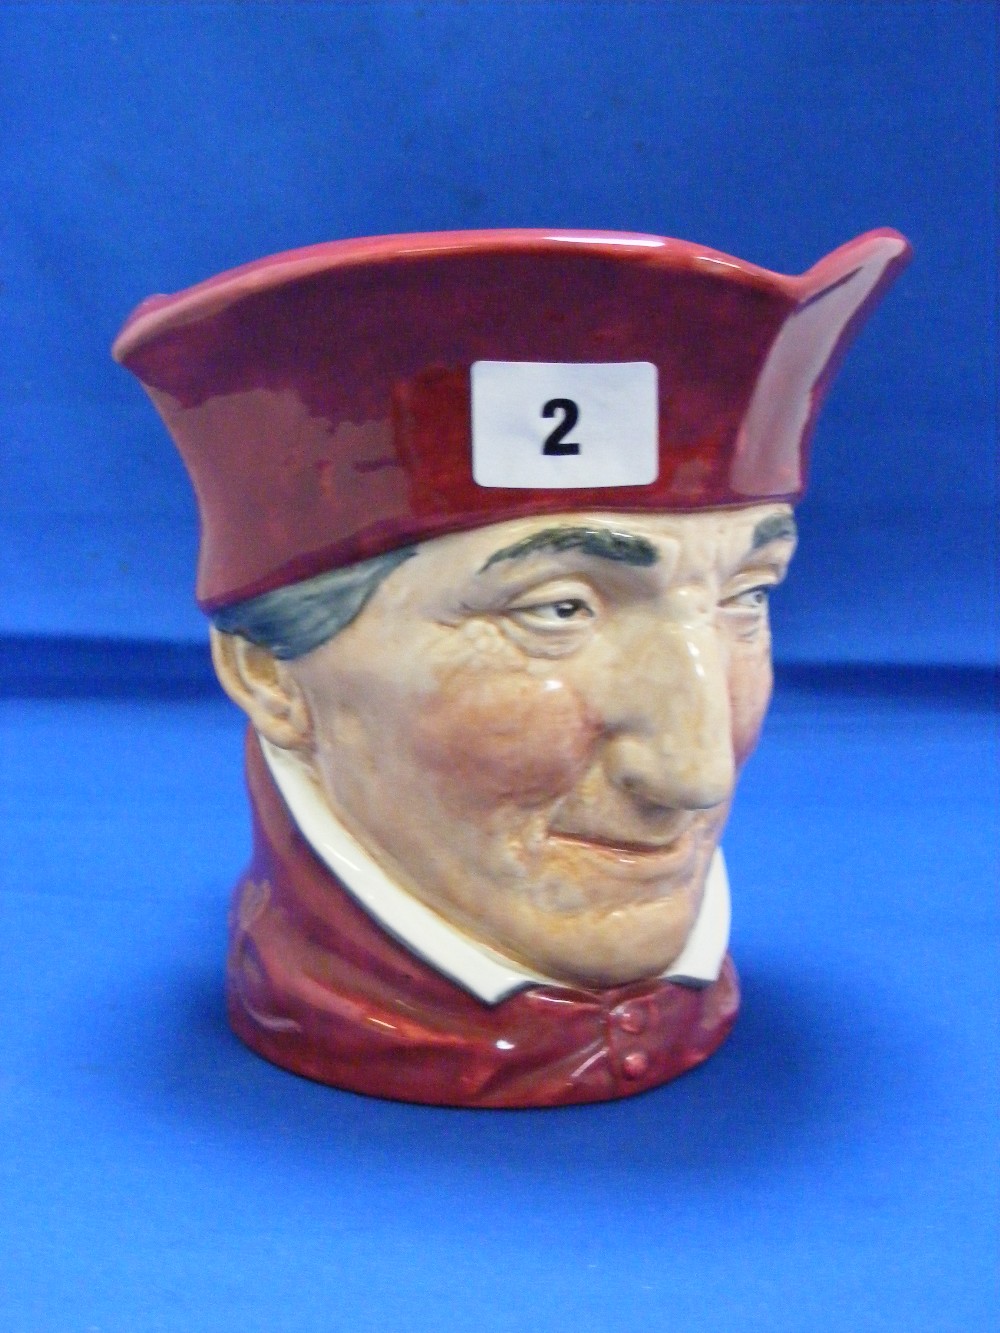 A Royal Doulton Character jug of The Cardinal.